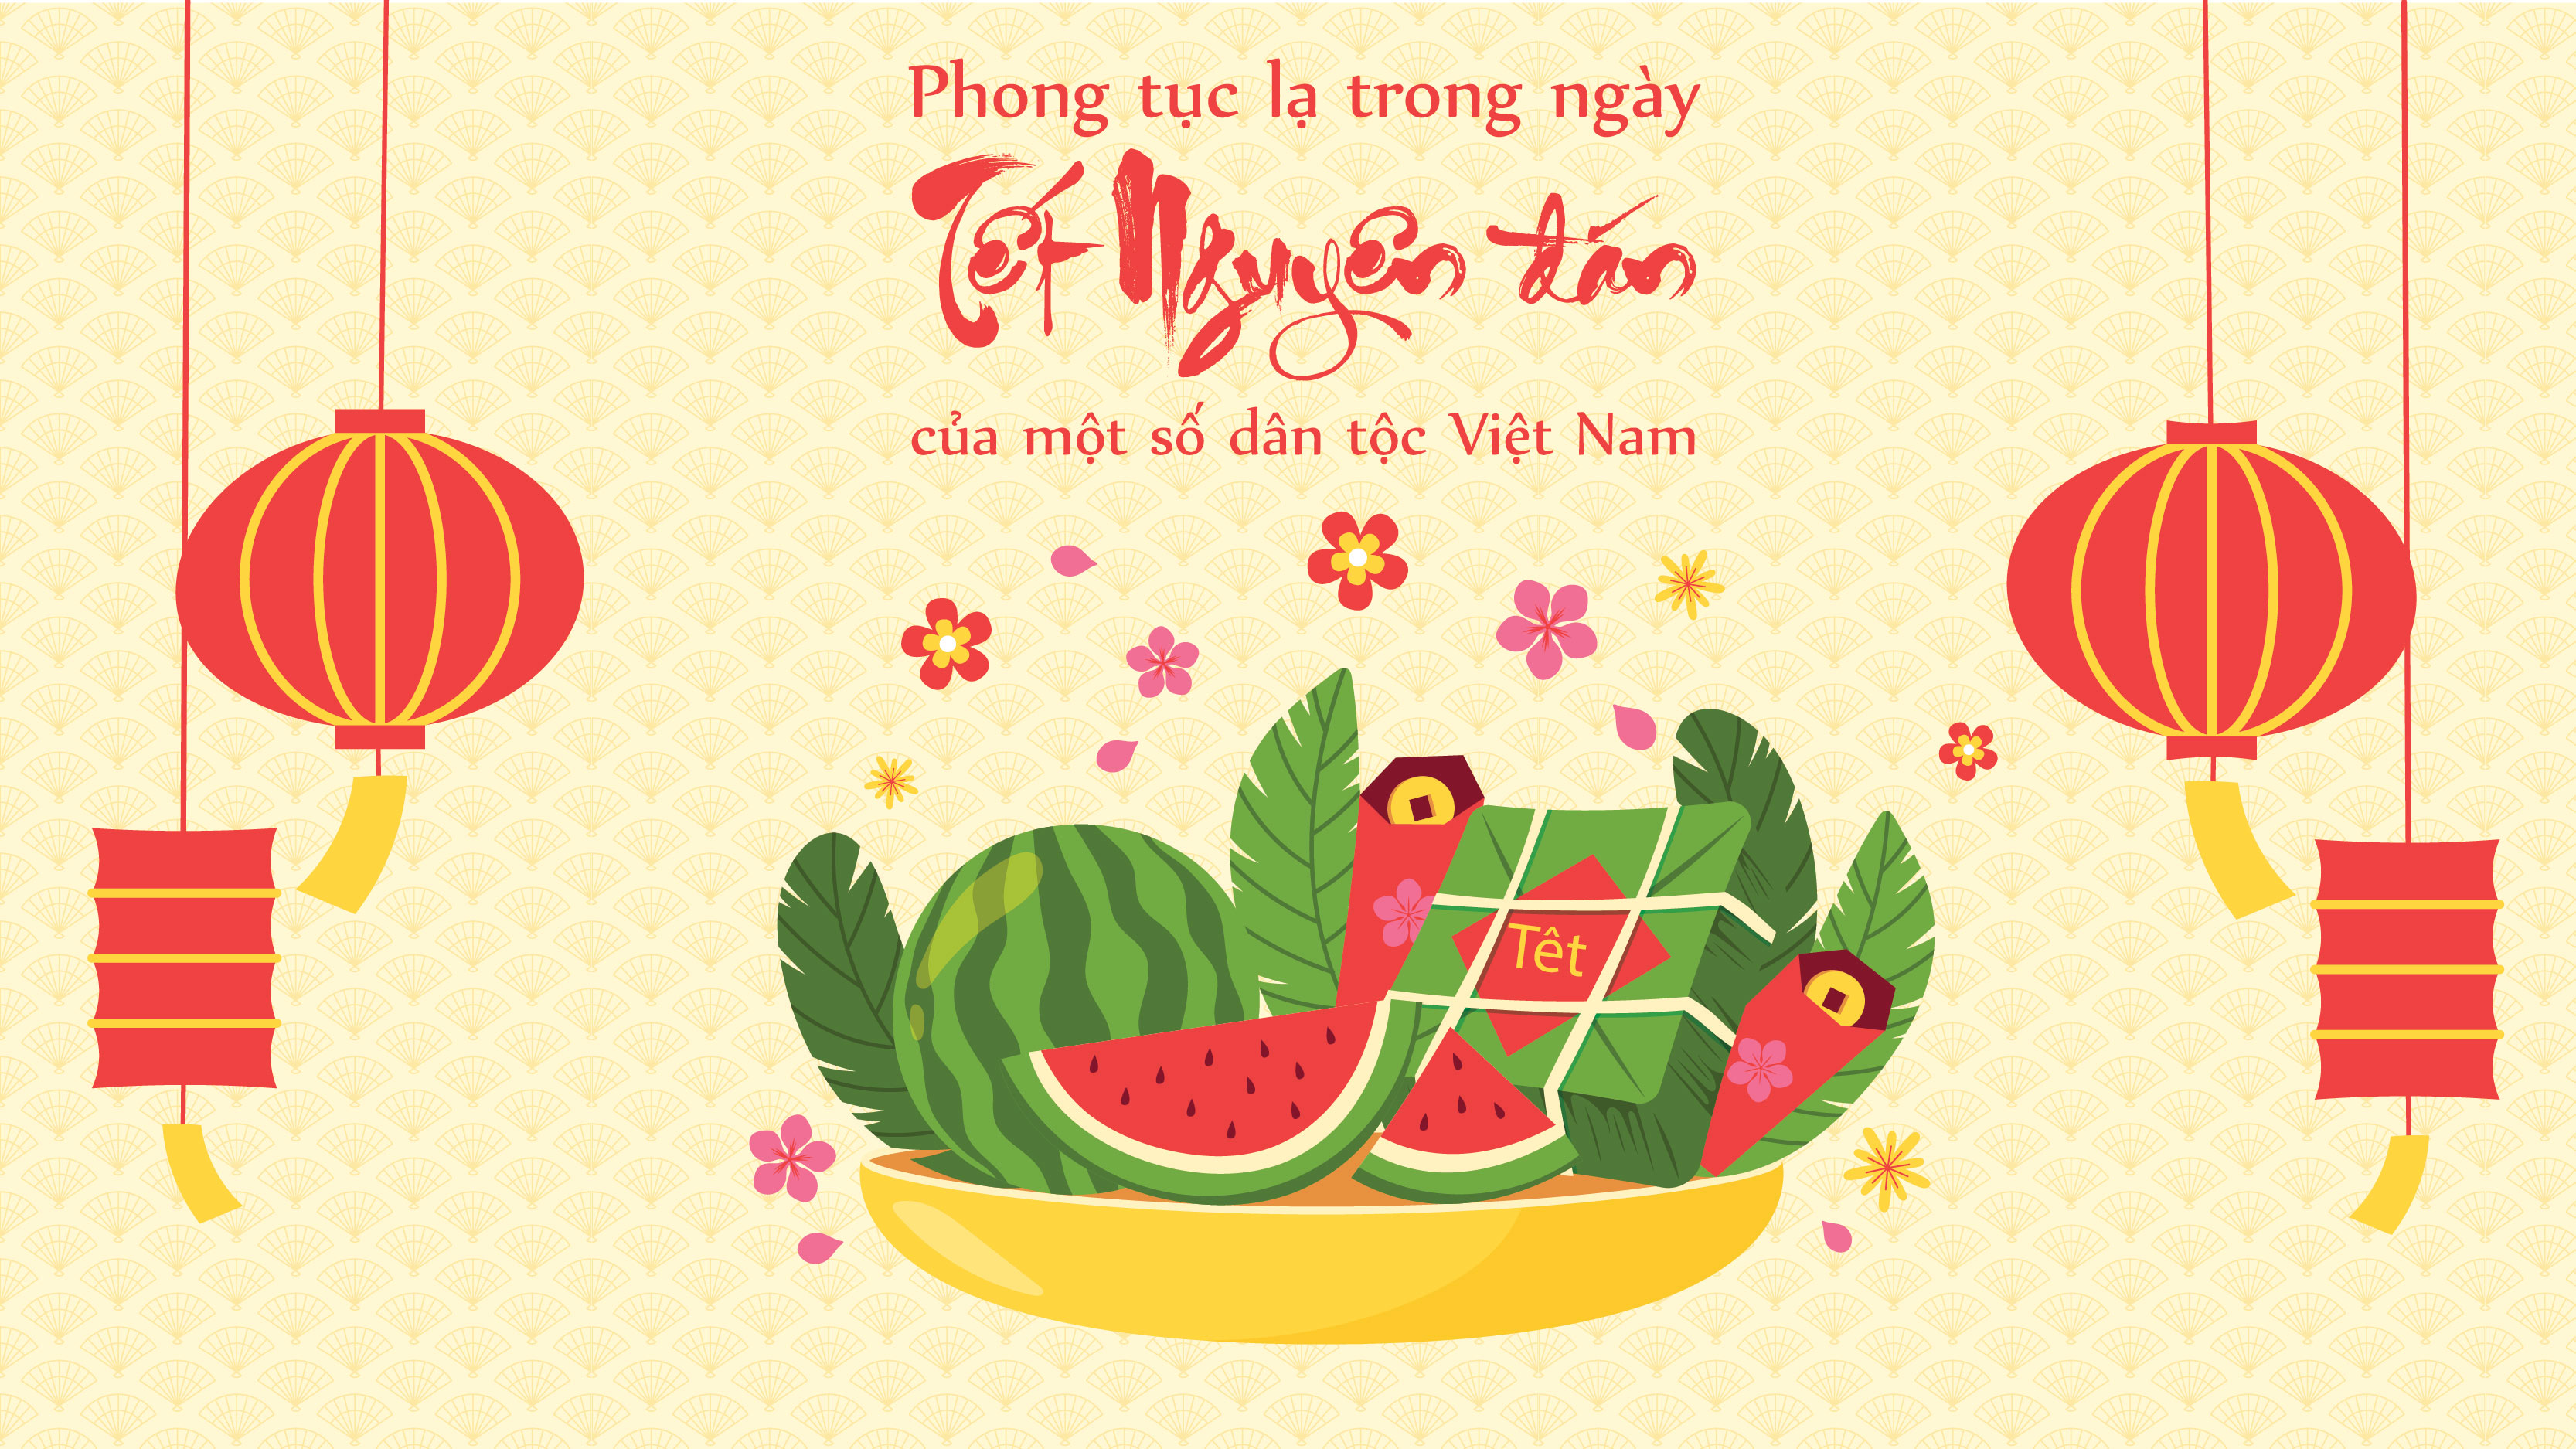 Việt Nam là một quốc gia đa dân tộc, với nhiều phong tục tập quán độc đáo. Đến ngày Tết Nguyên đán, hãy khám phá và tìm hiểu về phong tục Tết của các dân tộc Việt Nam. Từ những trò chơi đặc trưng cho ngày Tết đến những món ăn truyền thống, sẽ mang đến cho bạn nhiều trải nghiệm thú vị và đáng nhớ.